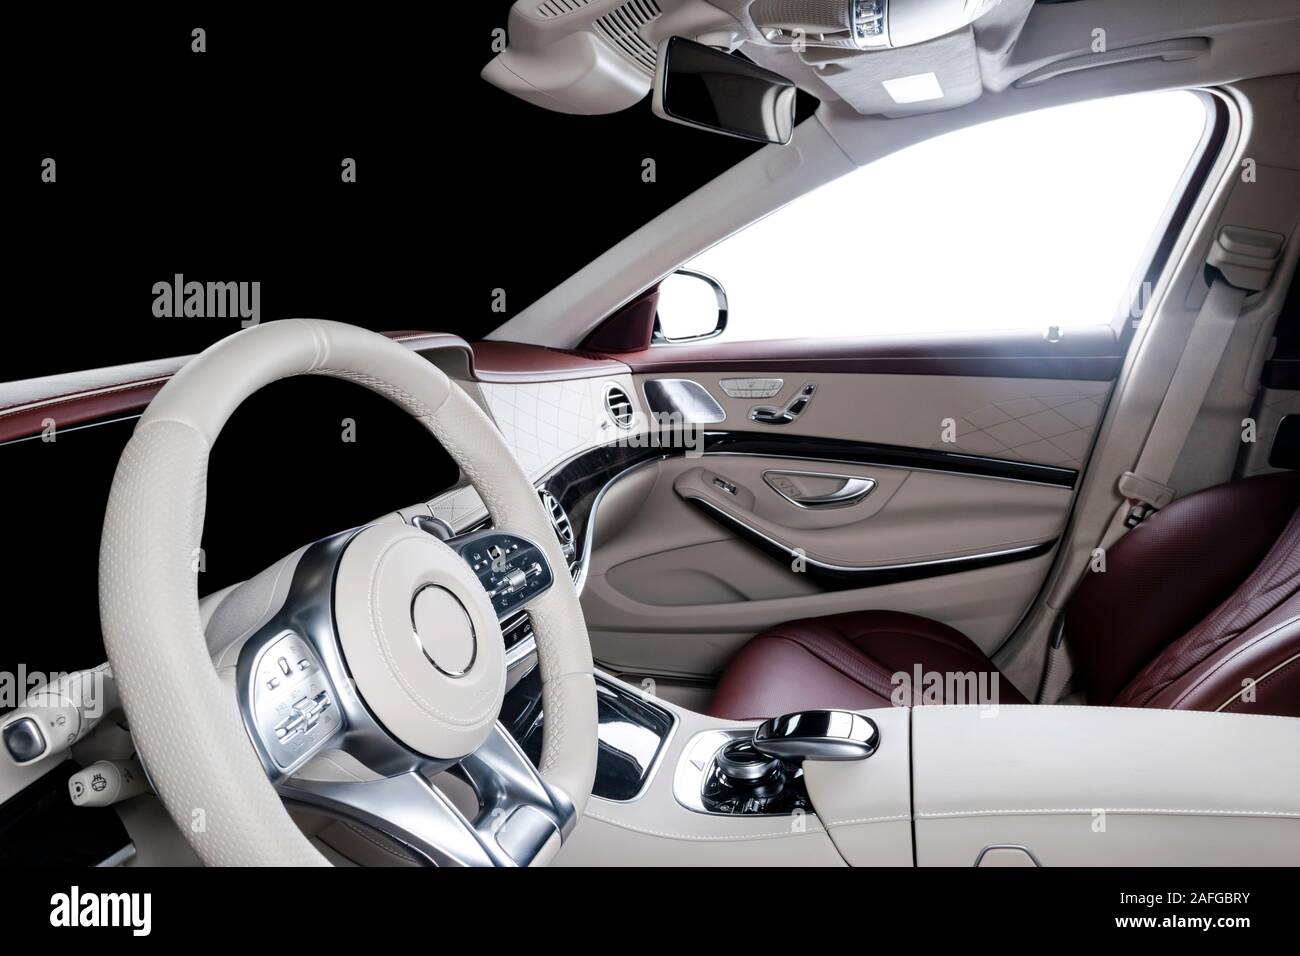 Moderner Luxus Auto weiss Leder Interieur mit natürlichem Holz. Teil aus  Leder Autositz details mit Ziernähten. Interieur mit Dashboard. White perf  Stockfotografie - Alamy